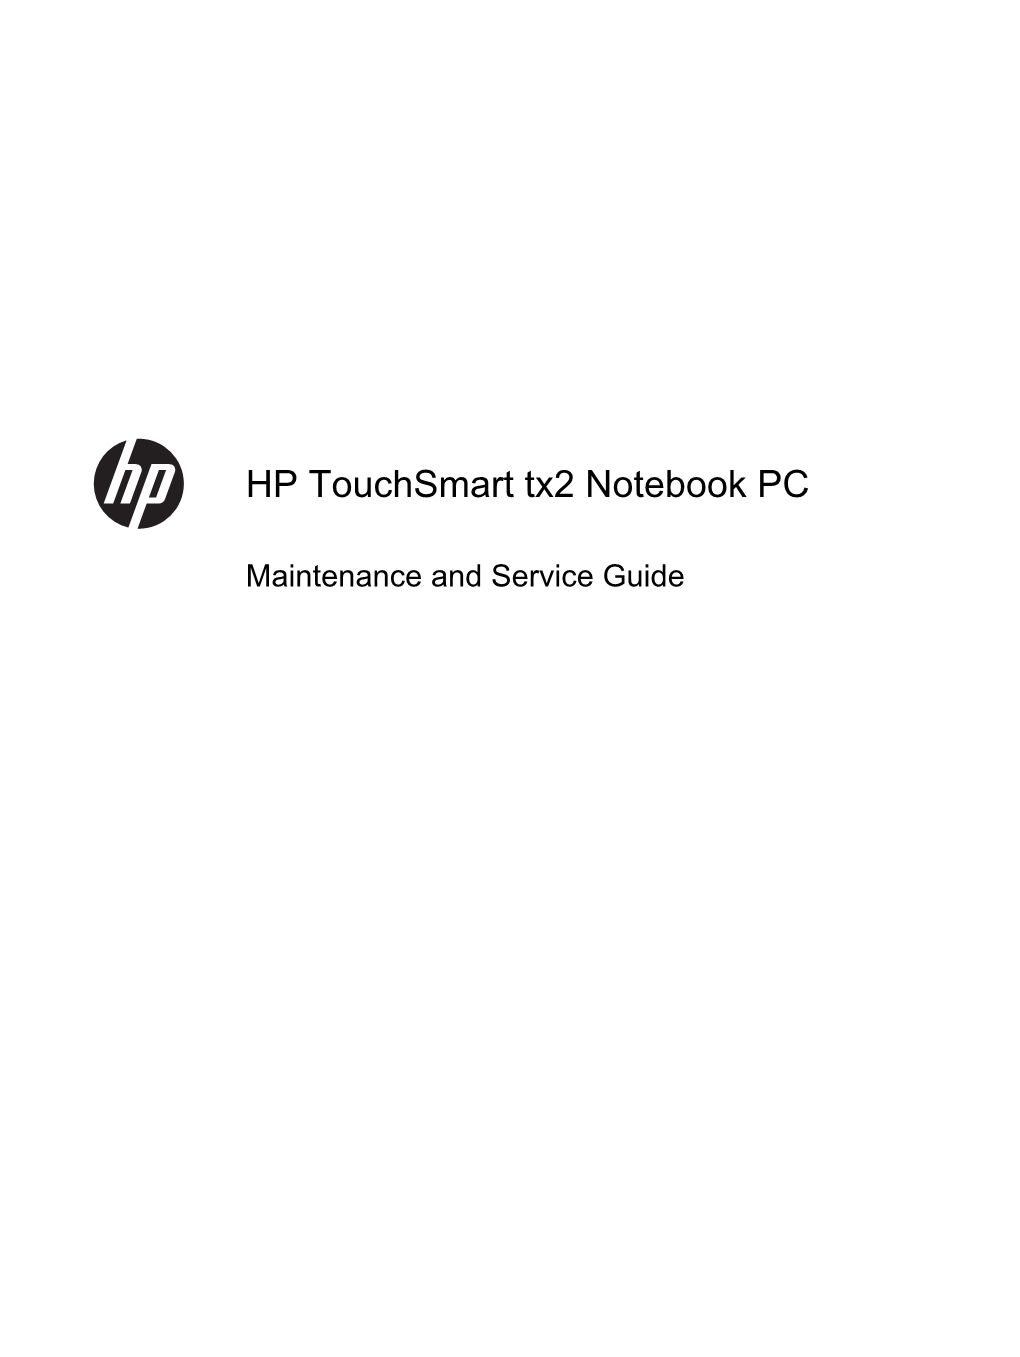 HP Touchsmart Tx2 Notebook PC